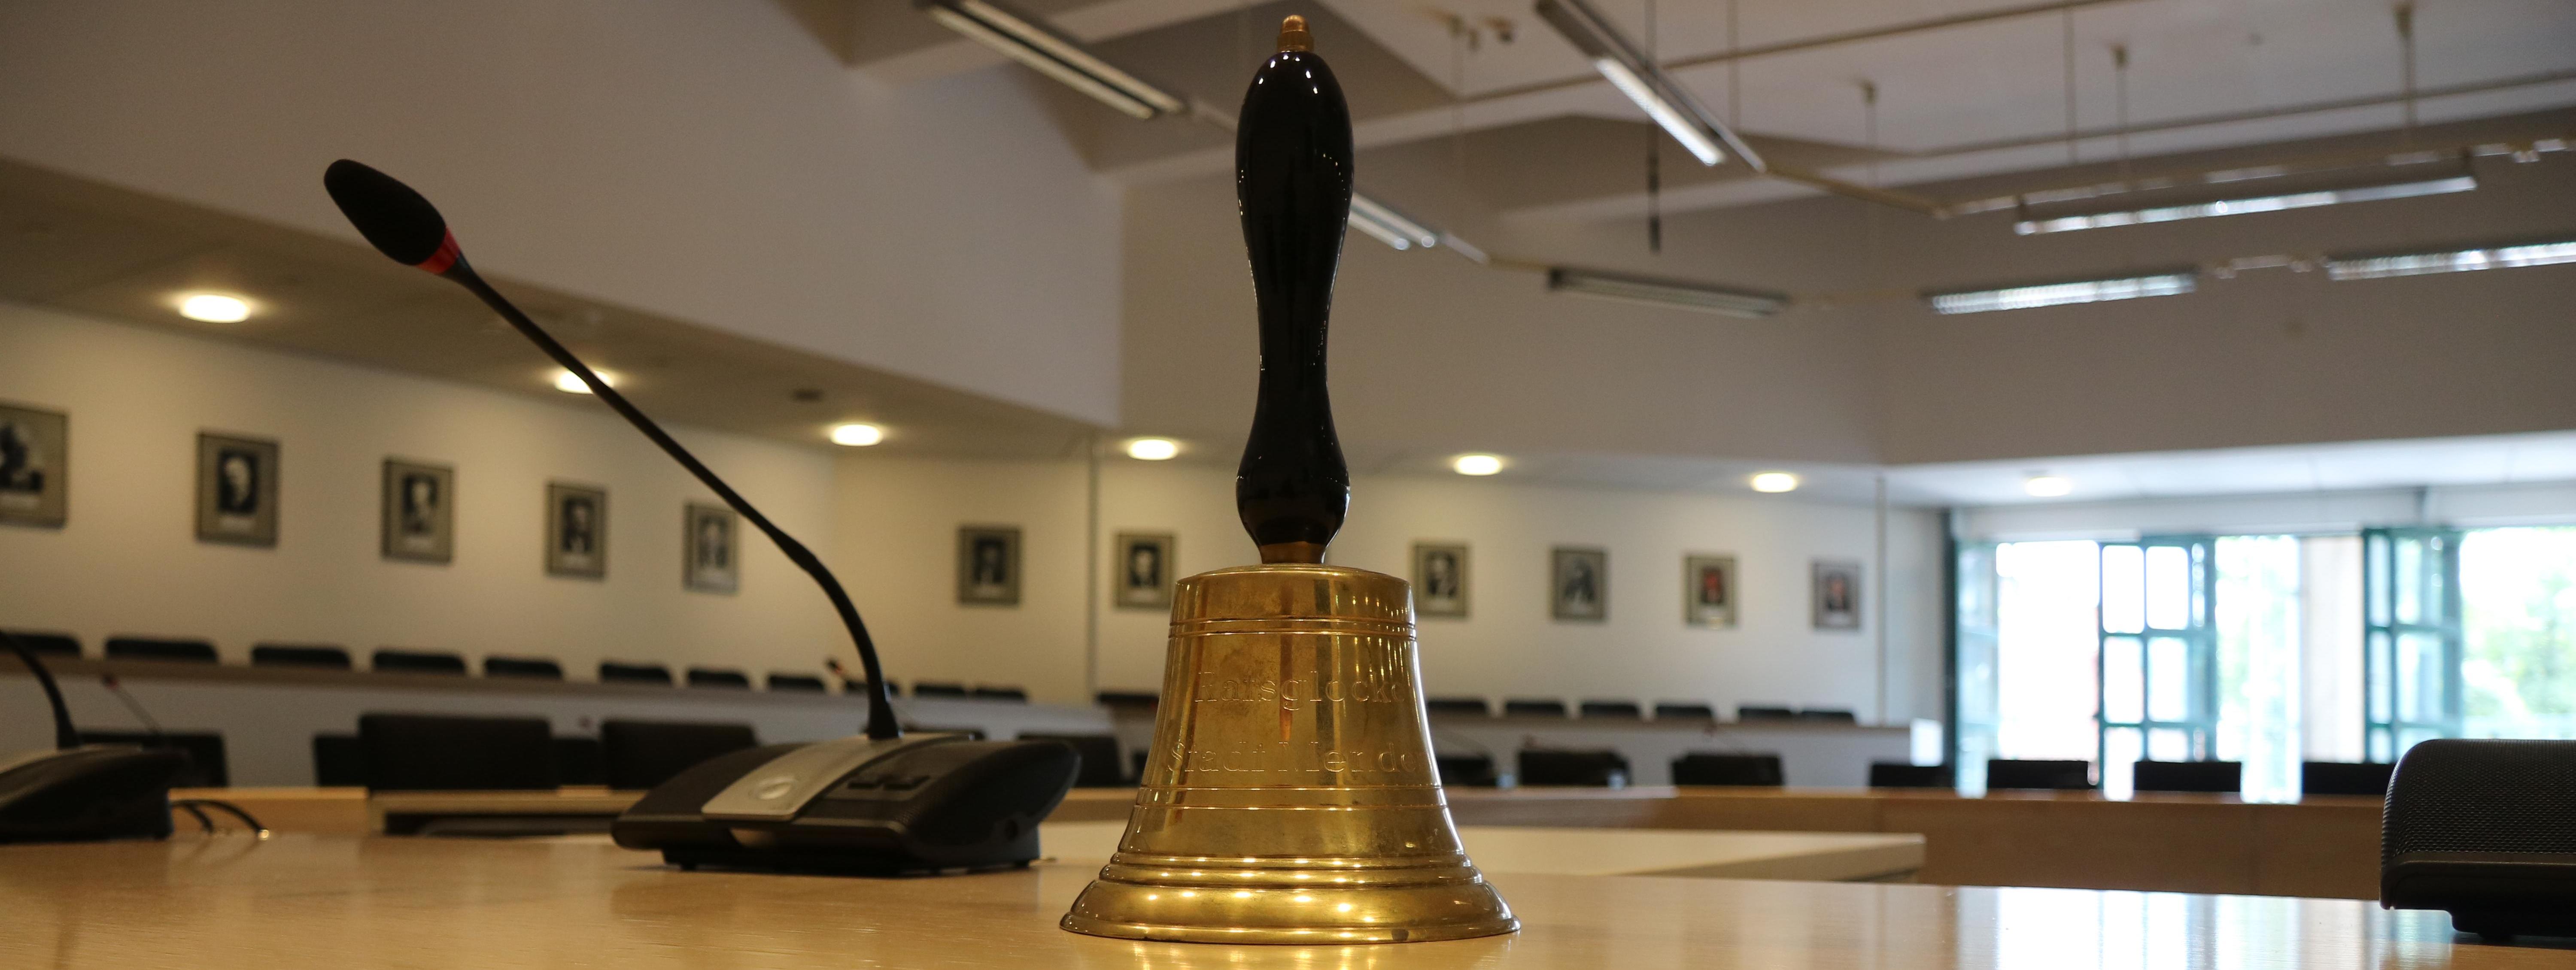 Die Glocke des Bürgermeisters steht neben dem Mikrophon auf einem Tisch. Mit dieser Glocke kann sich der Bürgermeister Gehör verschaffen, sollte es in einer Sitzung zu Laut werden.